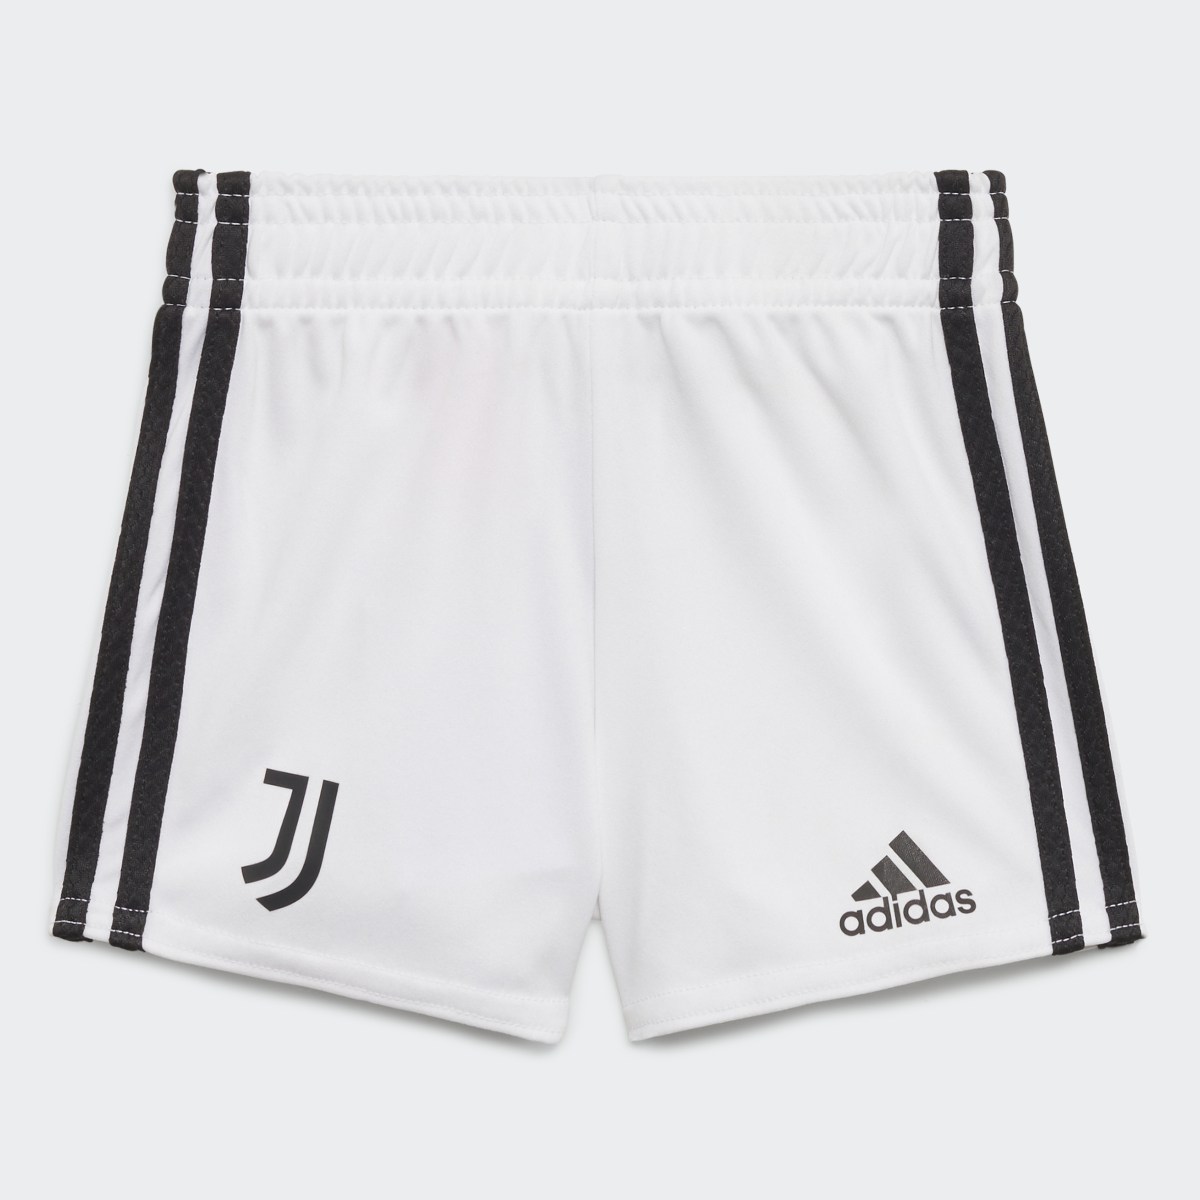 Adidas Juventus 21/22 Home Baby Kit. 5